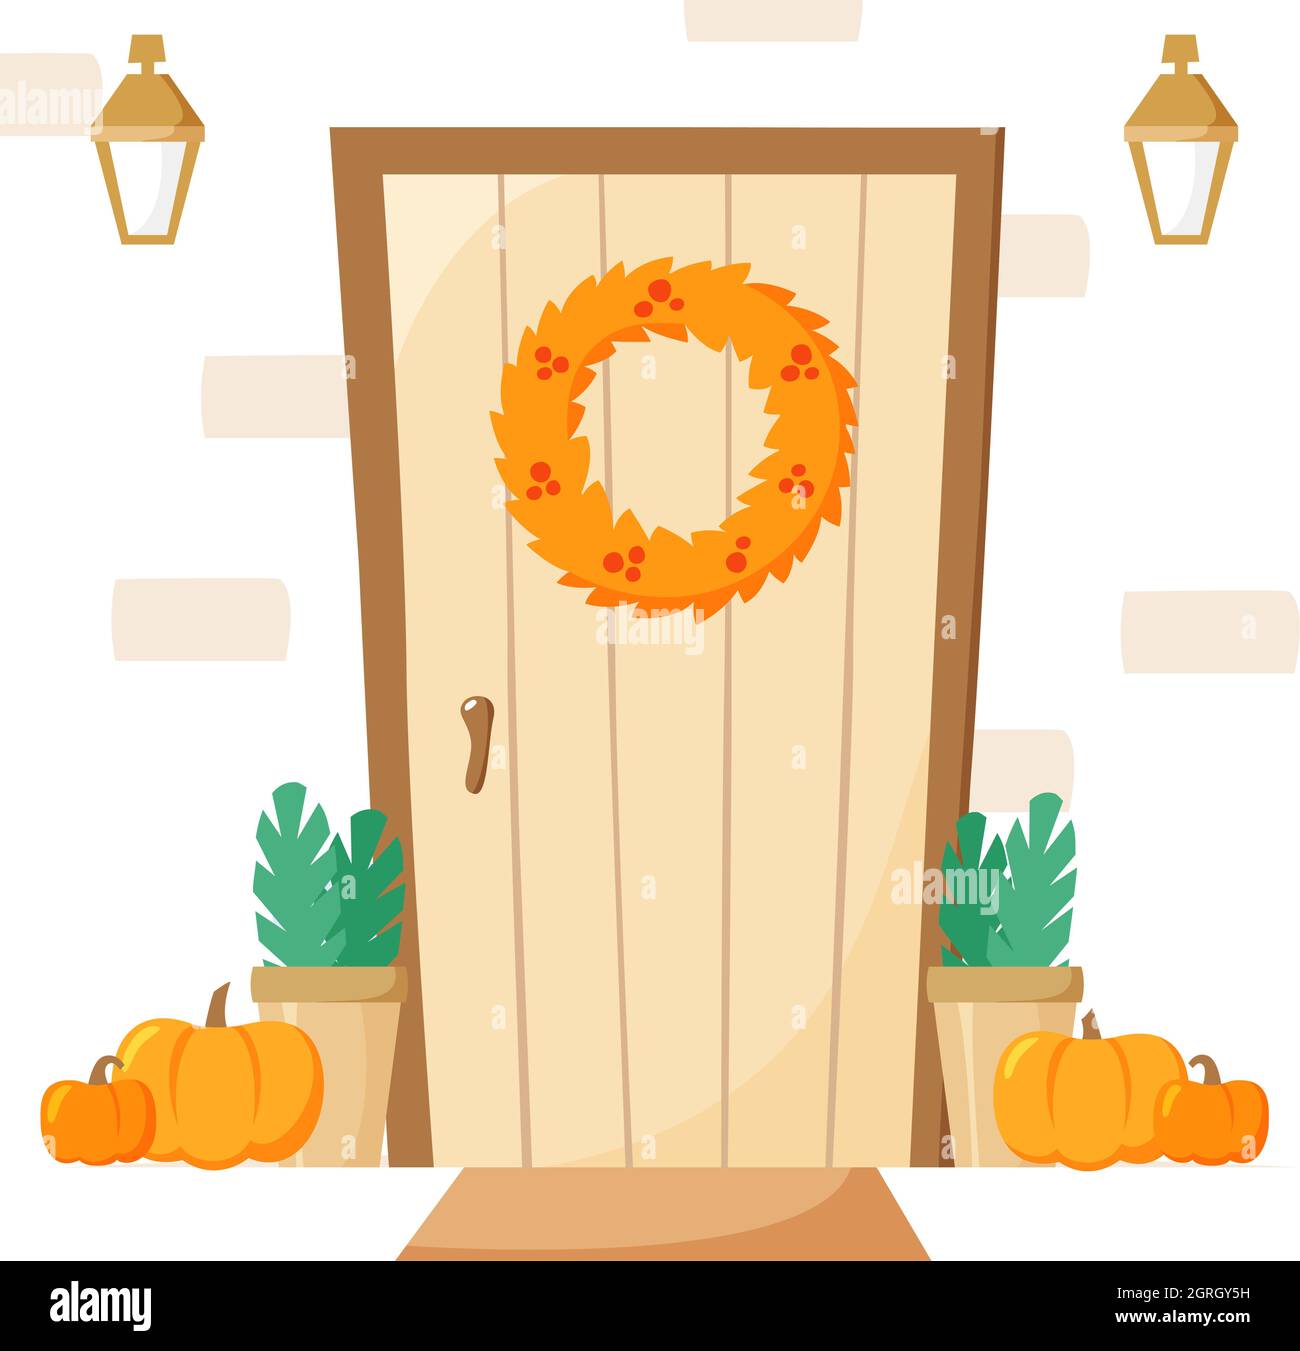 Haustür mit Herbstschmuck, Eingang mit Kranz und Kürbissen, Laternen und Pflanzen in Töpfen, Herbst-Vektor-Illustration, flacher Stil Stock Vektor